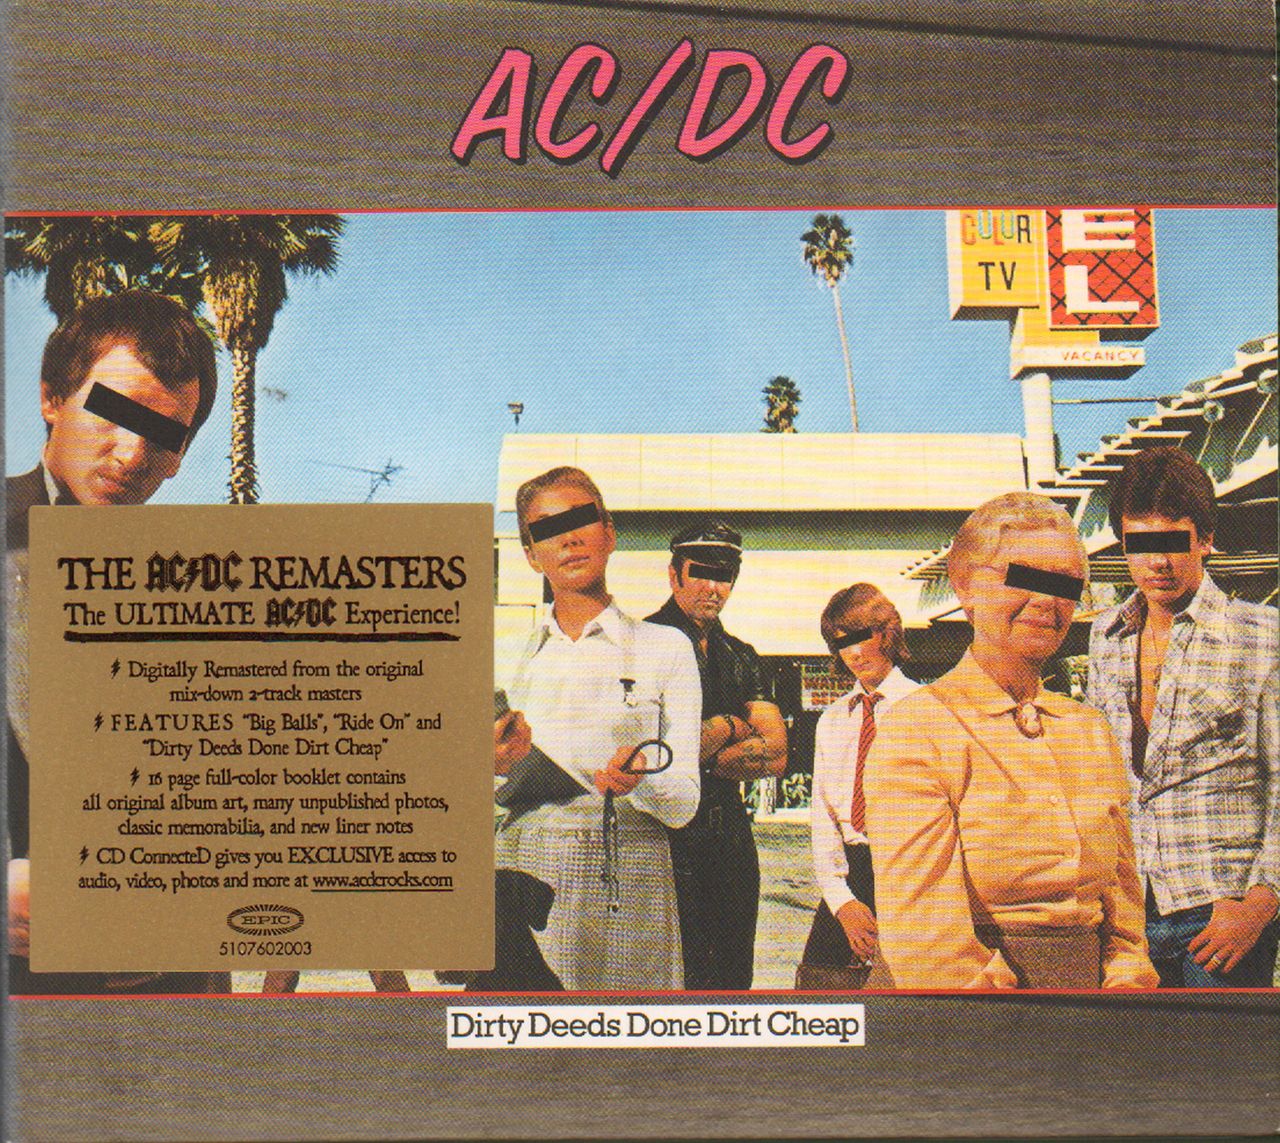 AC/DC Dirty Deeds Done Dirt Cheap UK CD album — RareVinyl.com